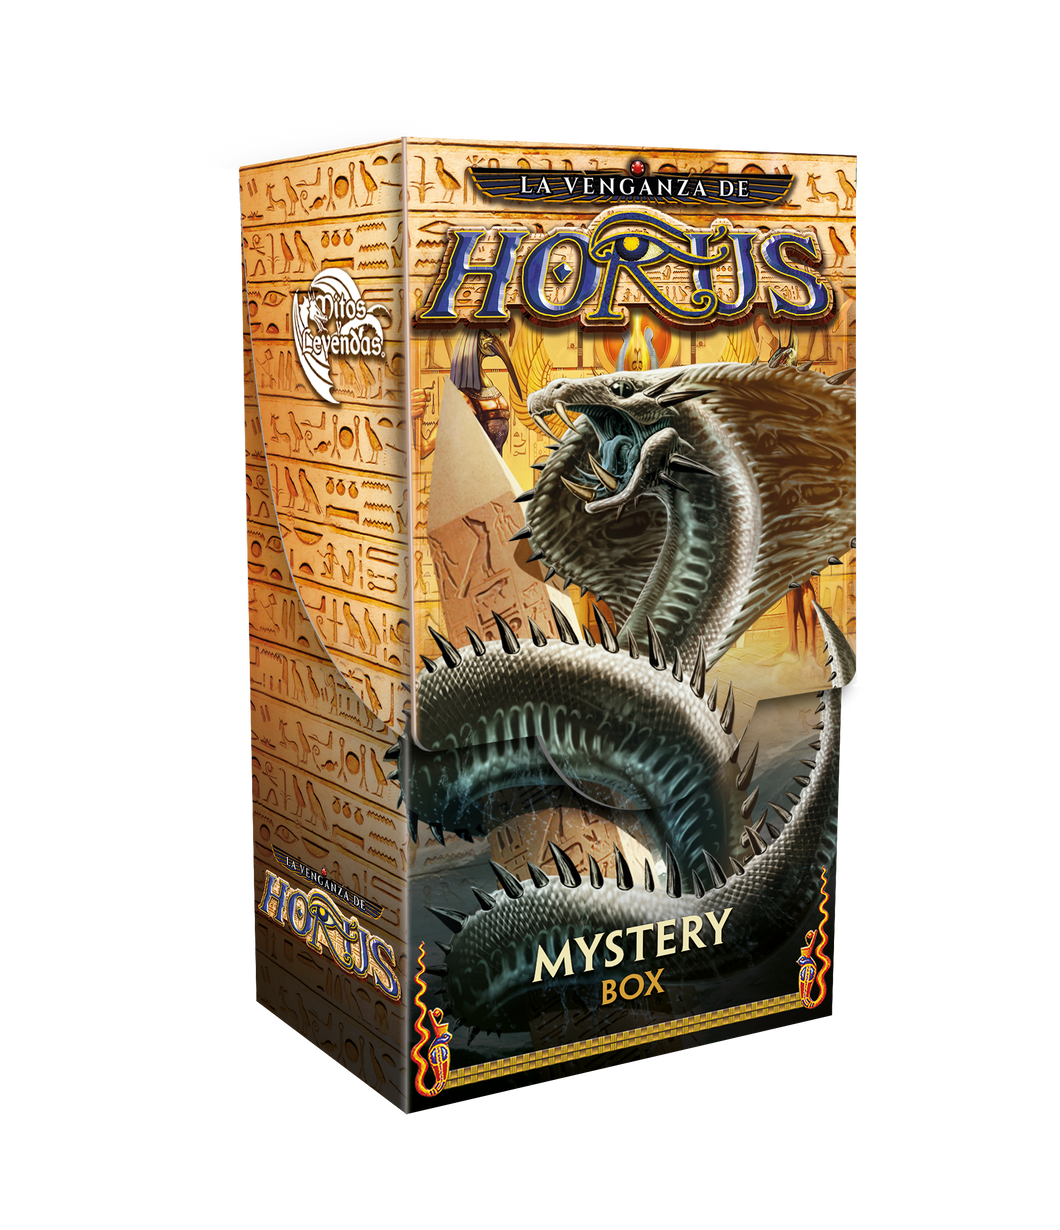 Oferta Relámpago Mystery Box edición La Venganza de Horus